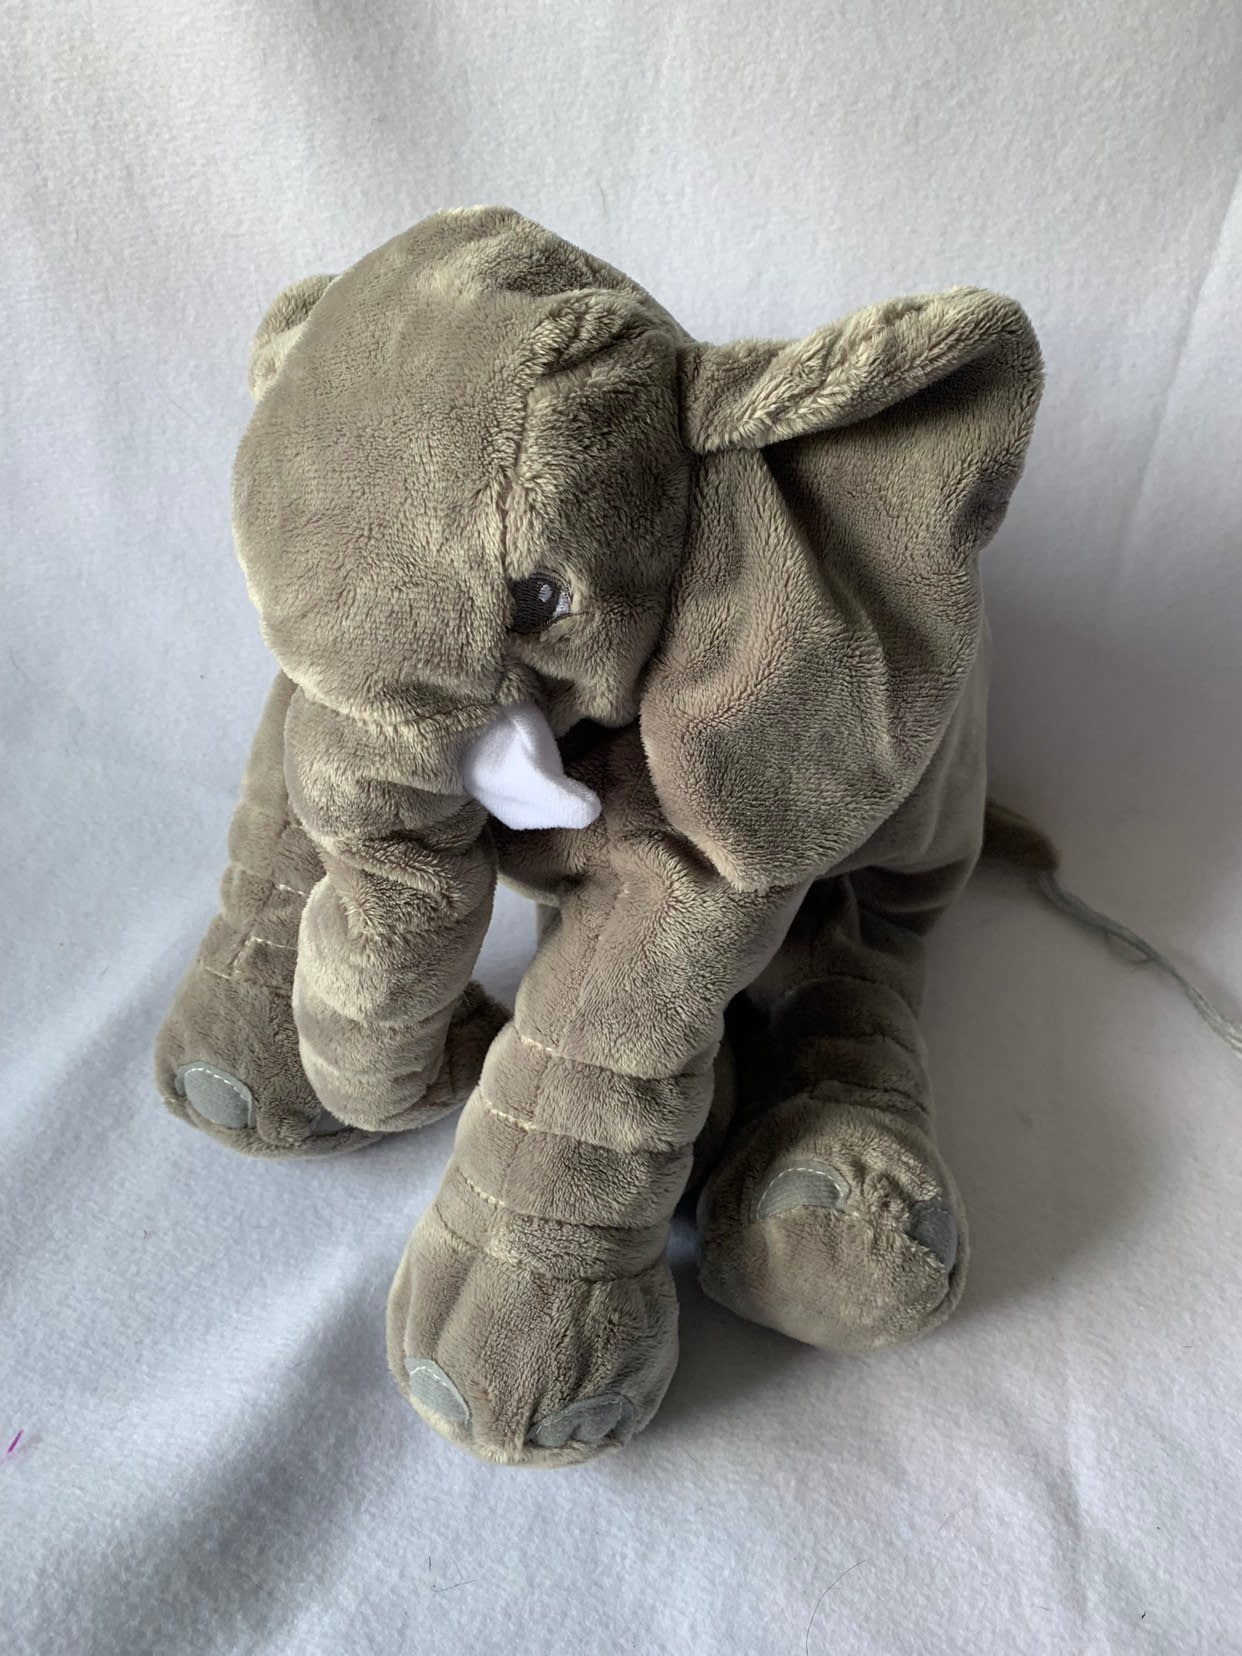 Weighted stuffed animal large elephant sensory toy 4 or 6 | Etsy